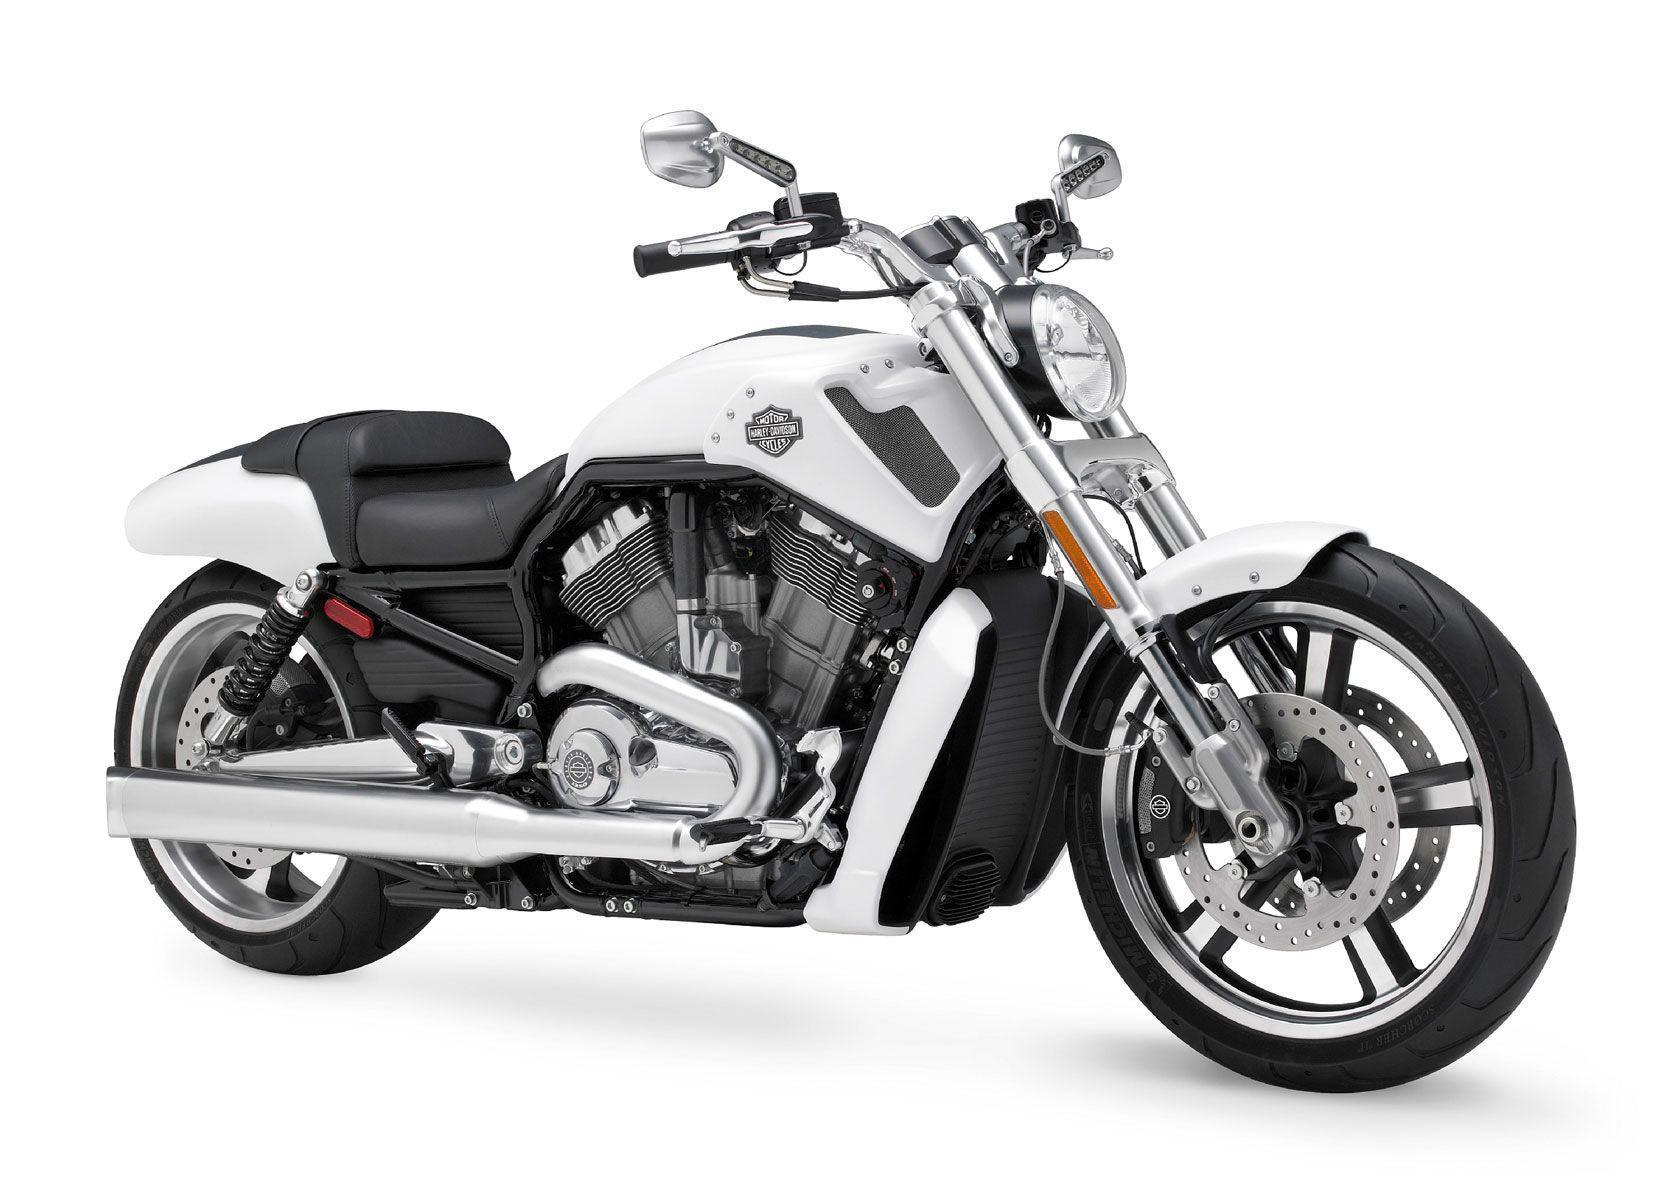 Harley Davidson VRSCF V Rod Muscle